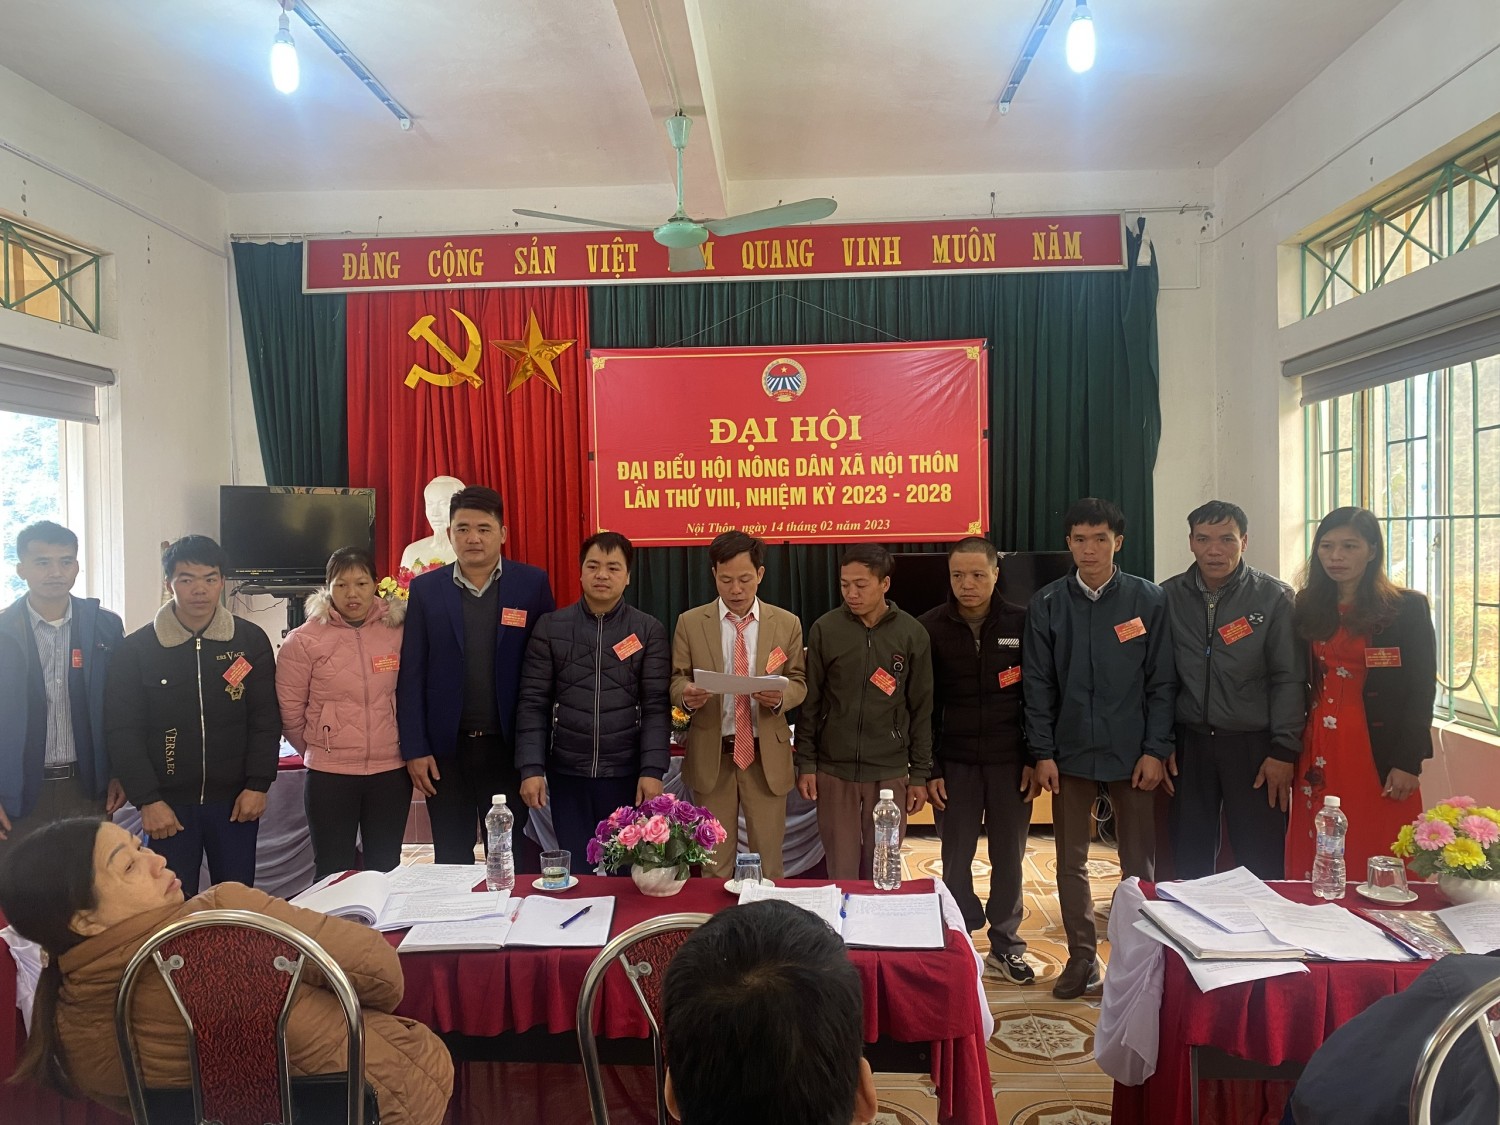 BCH khóa mới Hội Nông dân xã Nội thôn ra mắt Đại hội